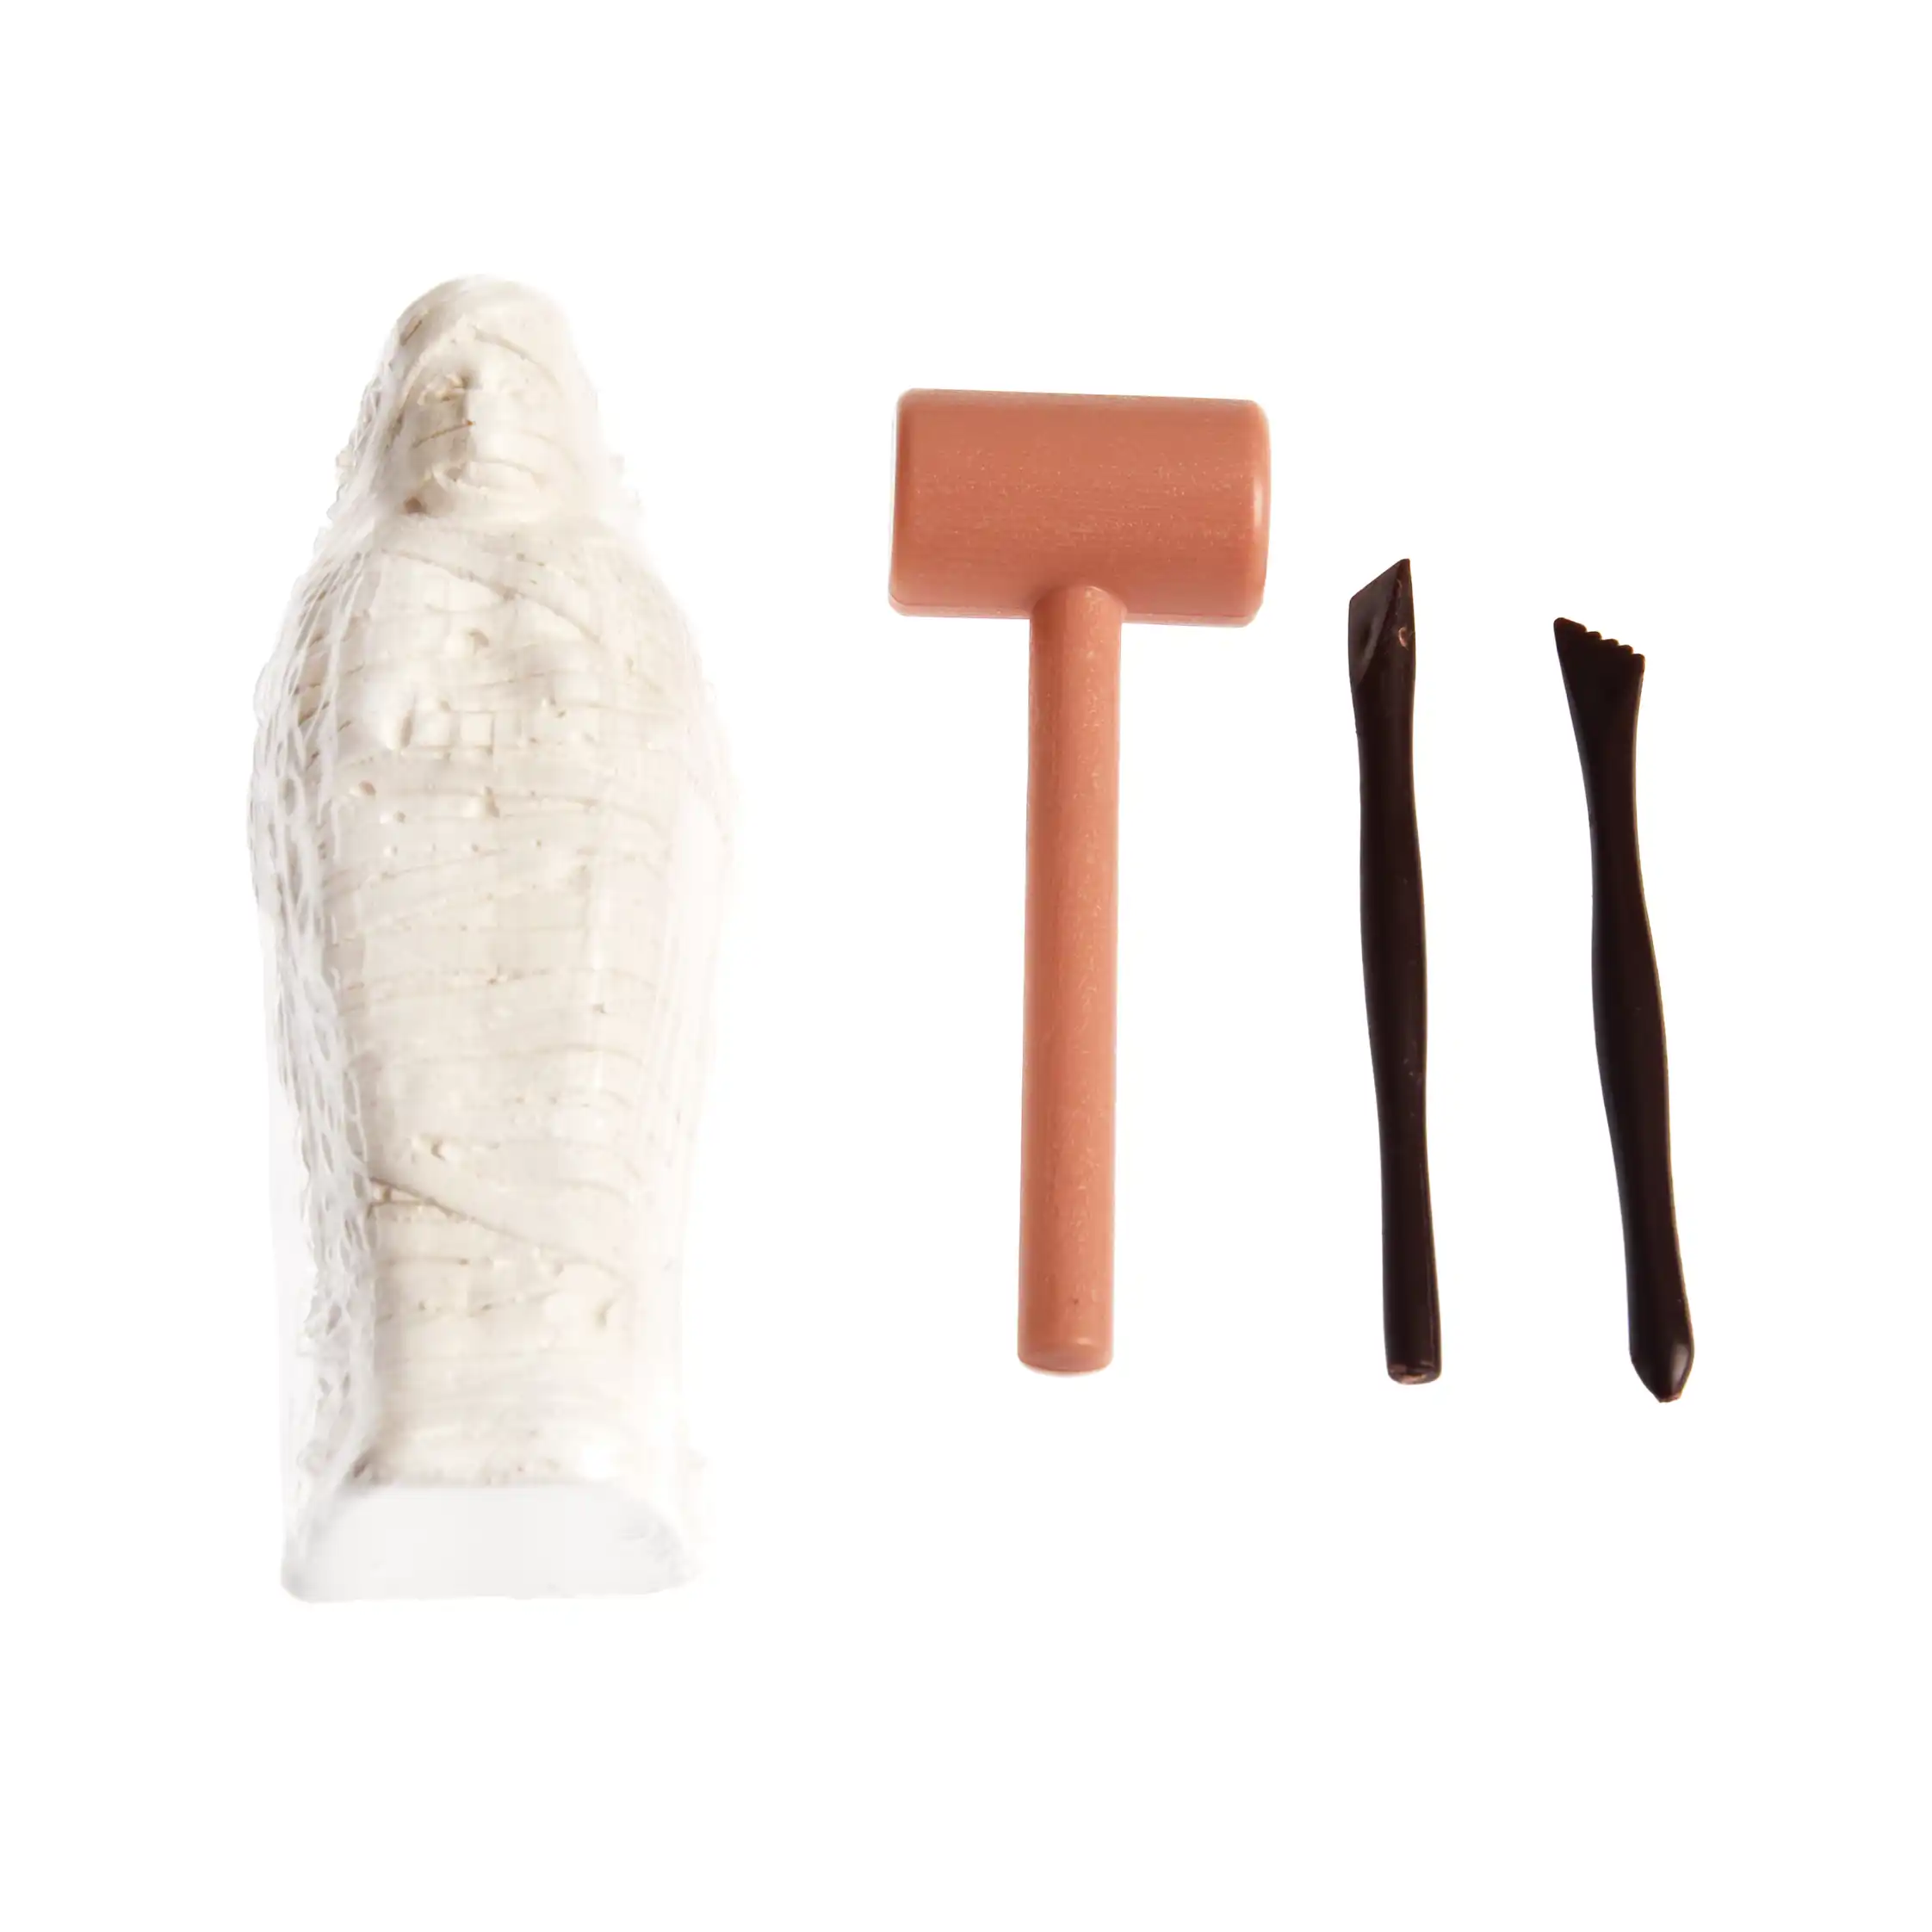 excavation kit - egyptian mummy